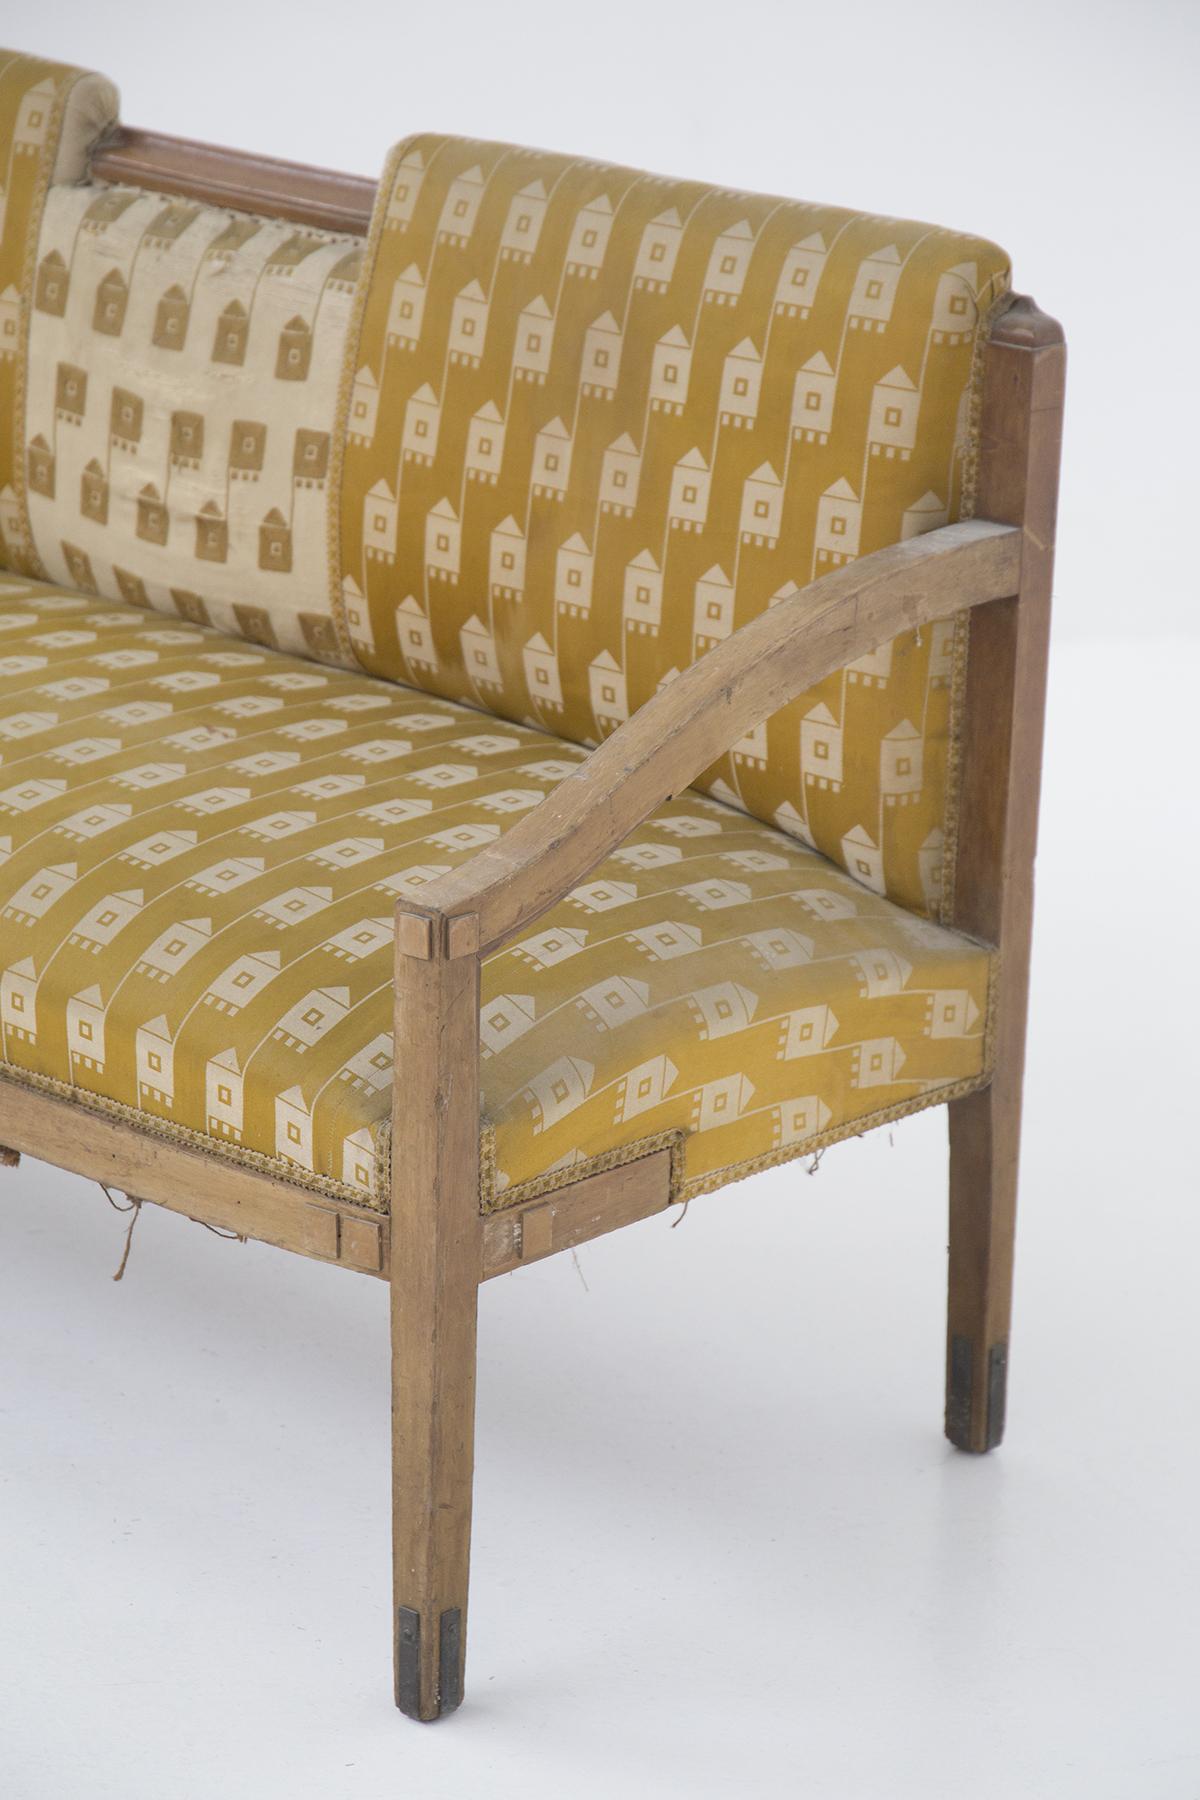 Das Sofa wurde in den 1950er Jahren für feine italienische Handwerkskunst entworfen.
Er ist mit dem Originalstoff gepolstert.
Die Struktur ist sehr einfach und von harten Formen, aus einfachem Holz, aber dauerhaft und schön. Es gibt 4 quadratische